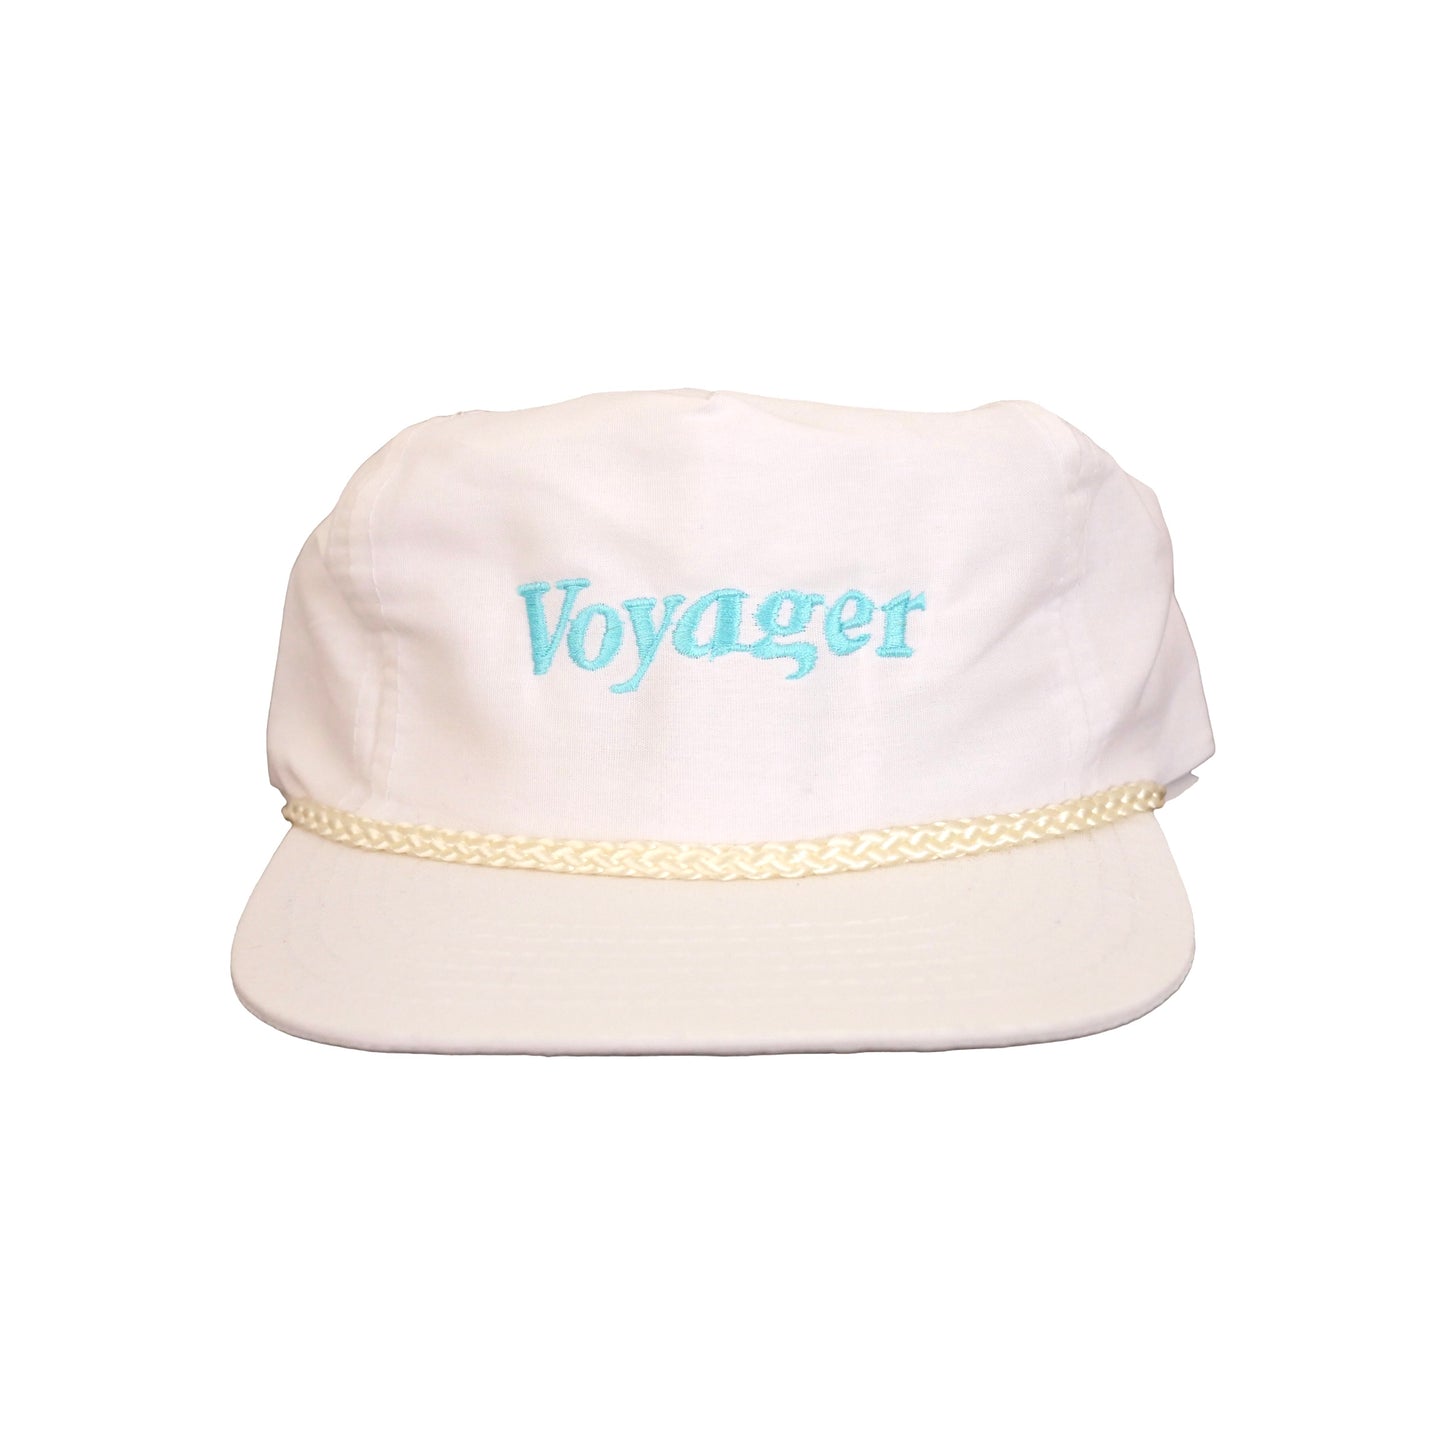 Voyager Snapback Hat